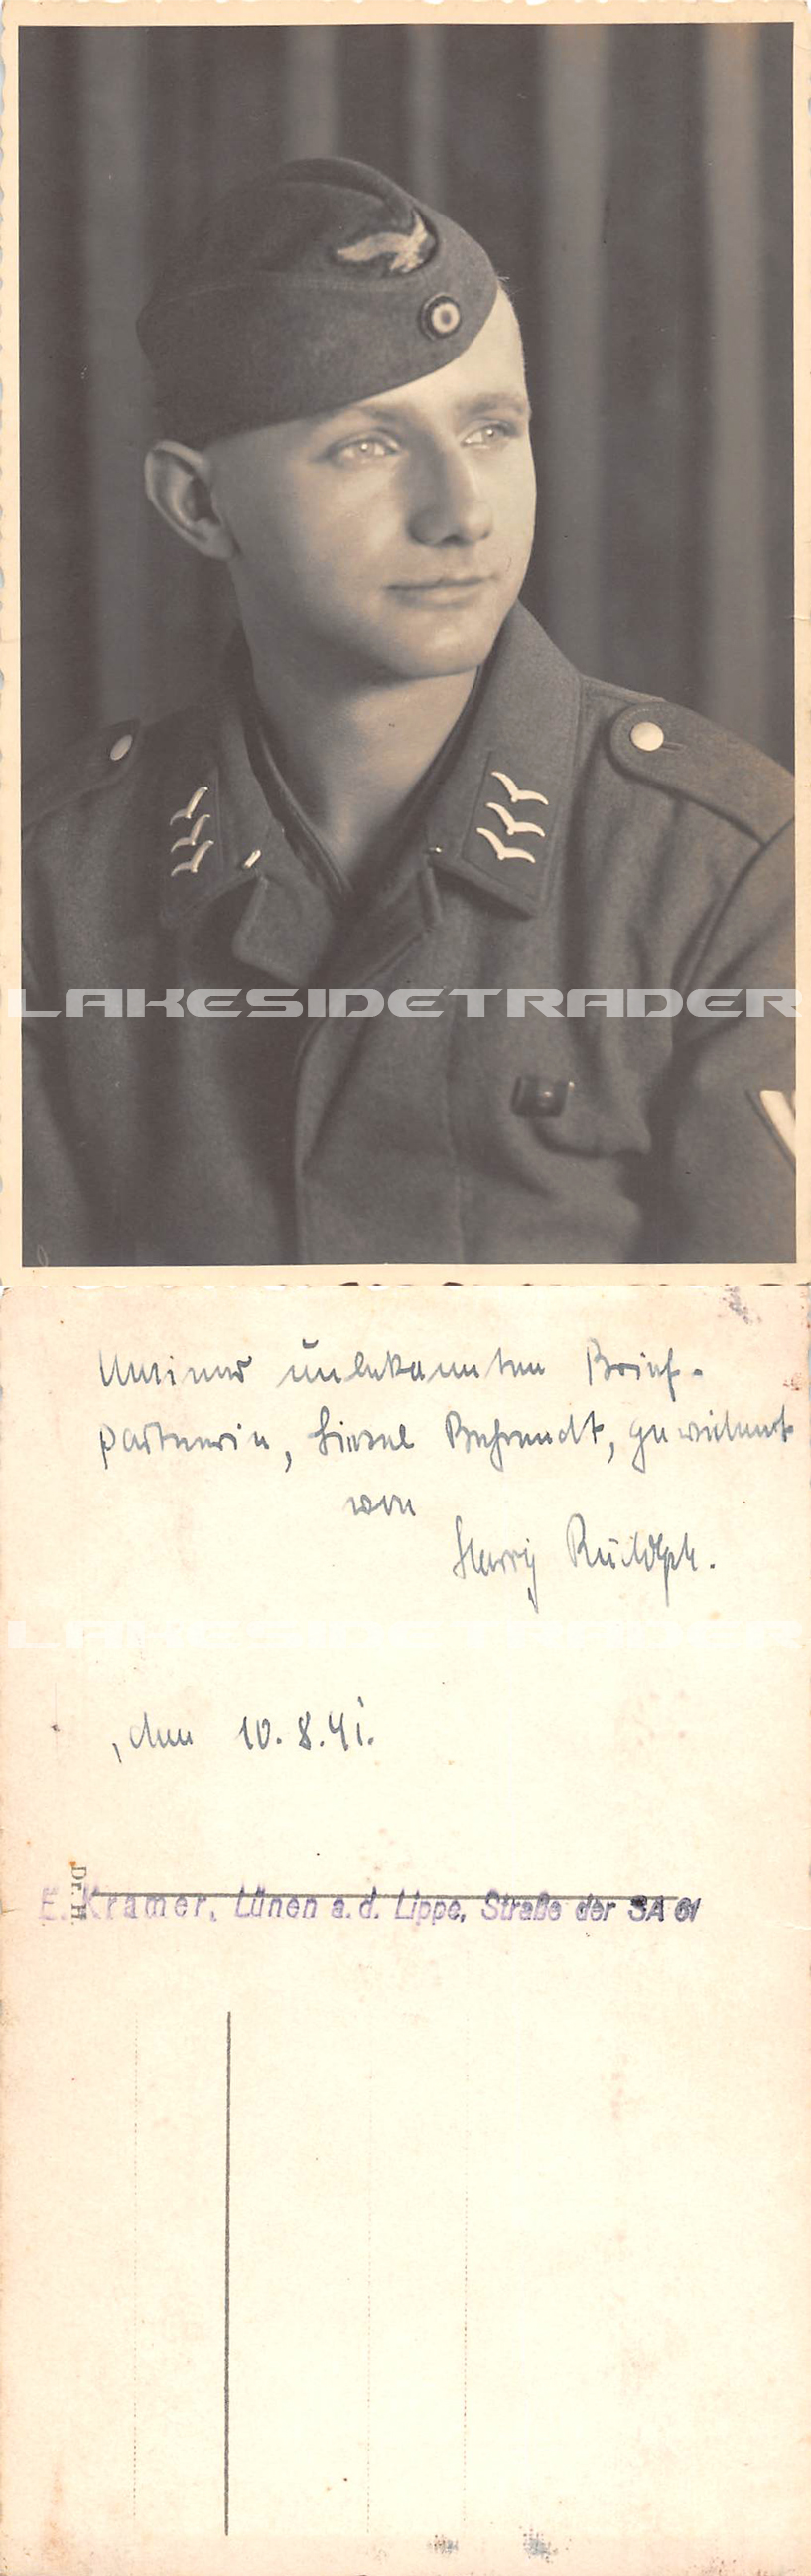 Luftwaffe Feldwebel Flieger EM Portrait Postcard